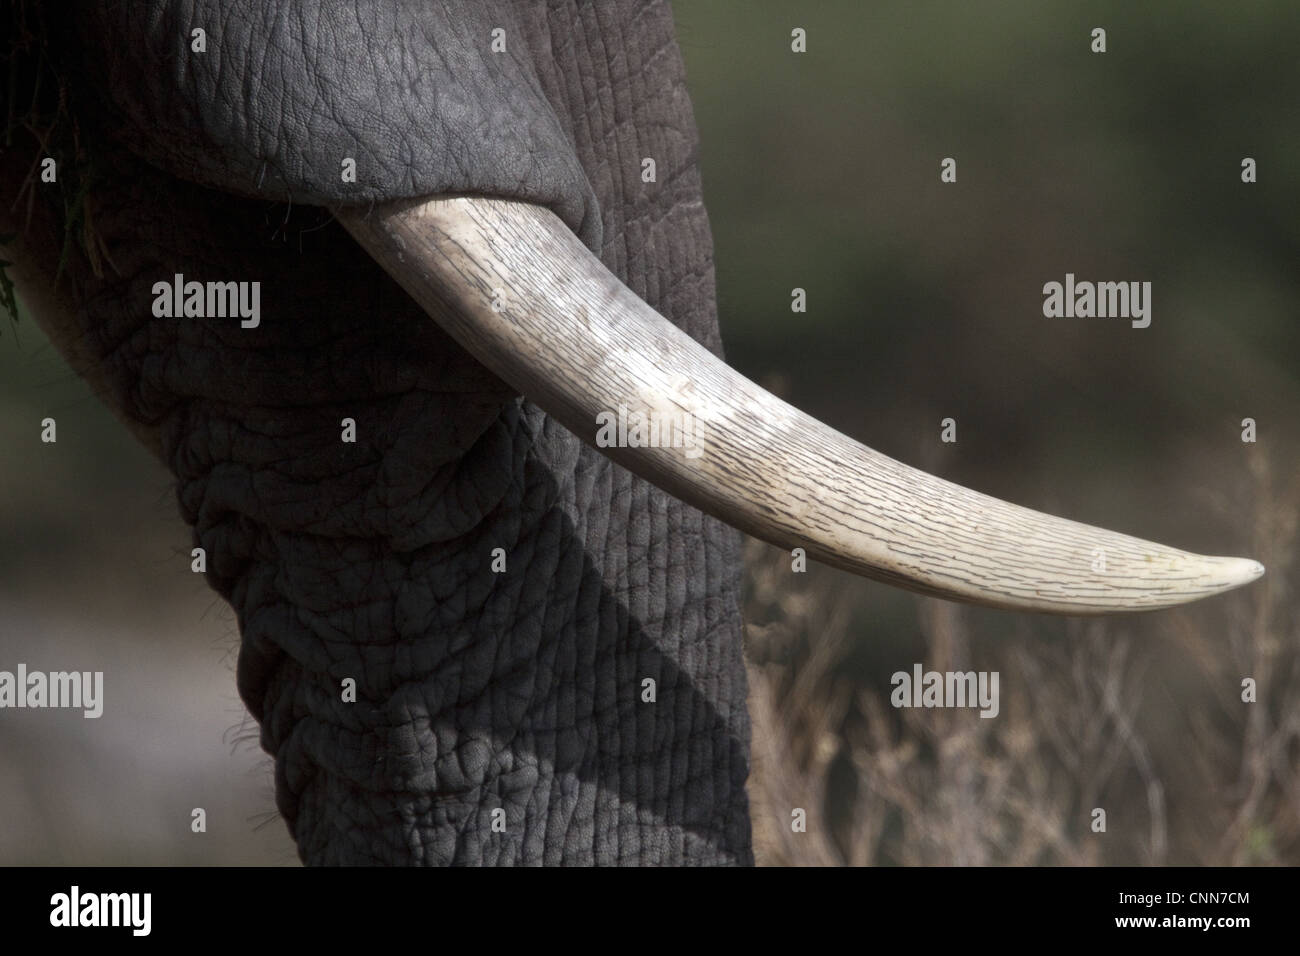 La zanna di avorio di elefante africano dal Botswana. Foto Stock